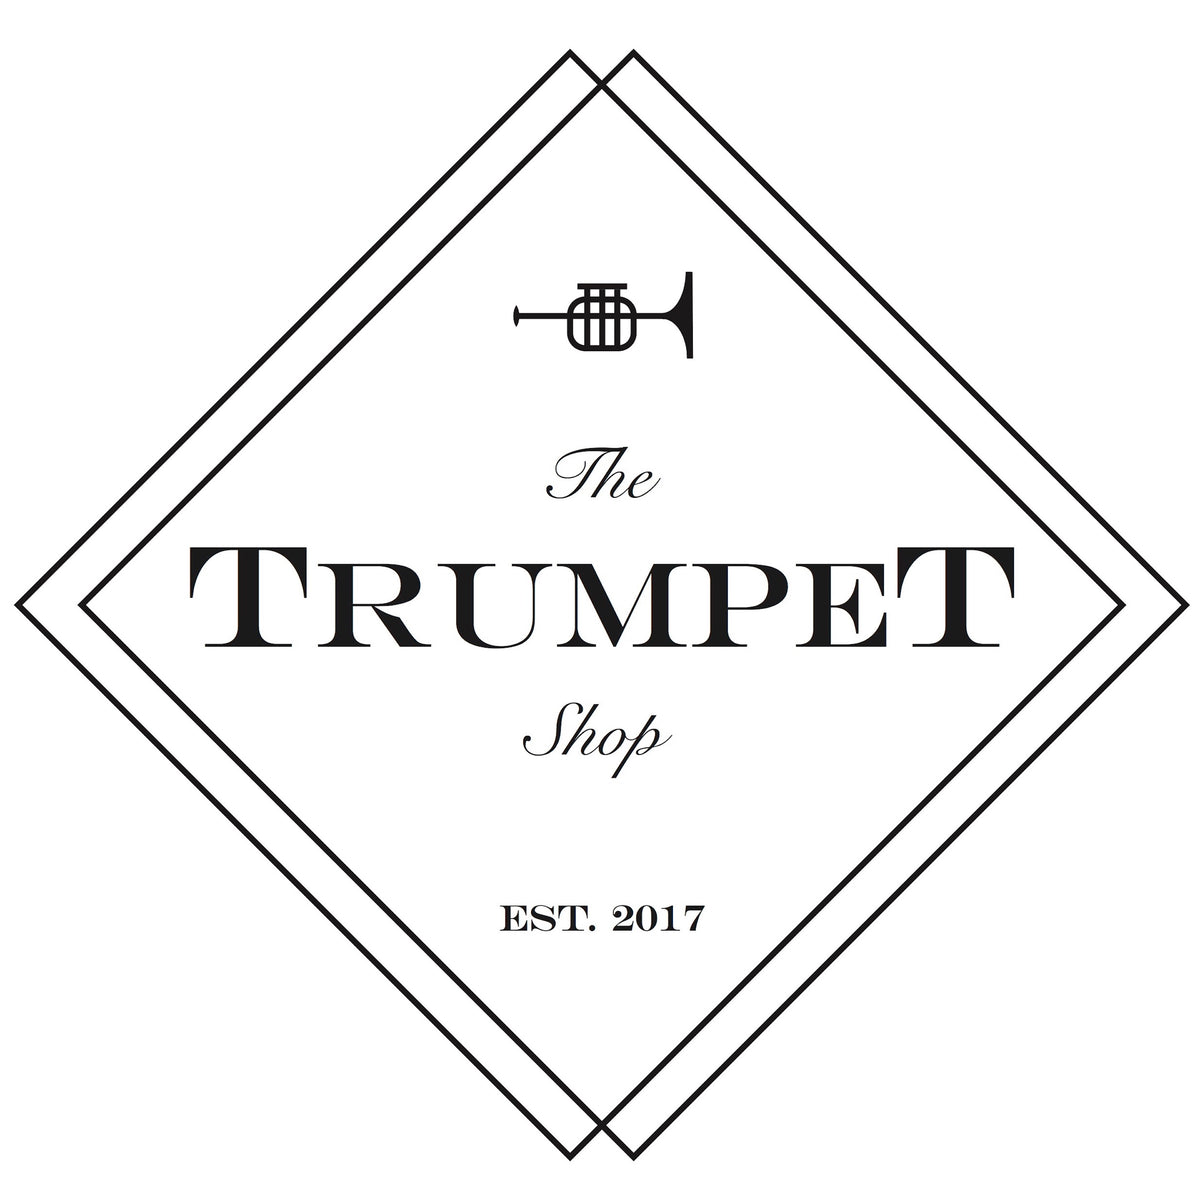 The Trumpet Shop